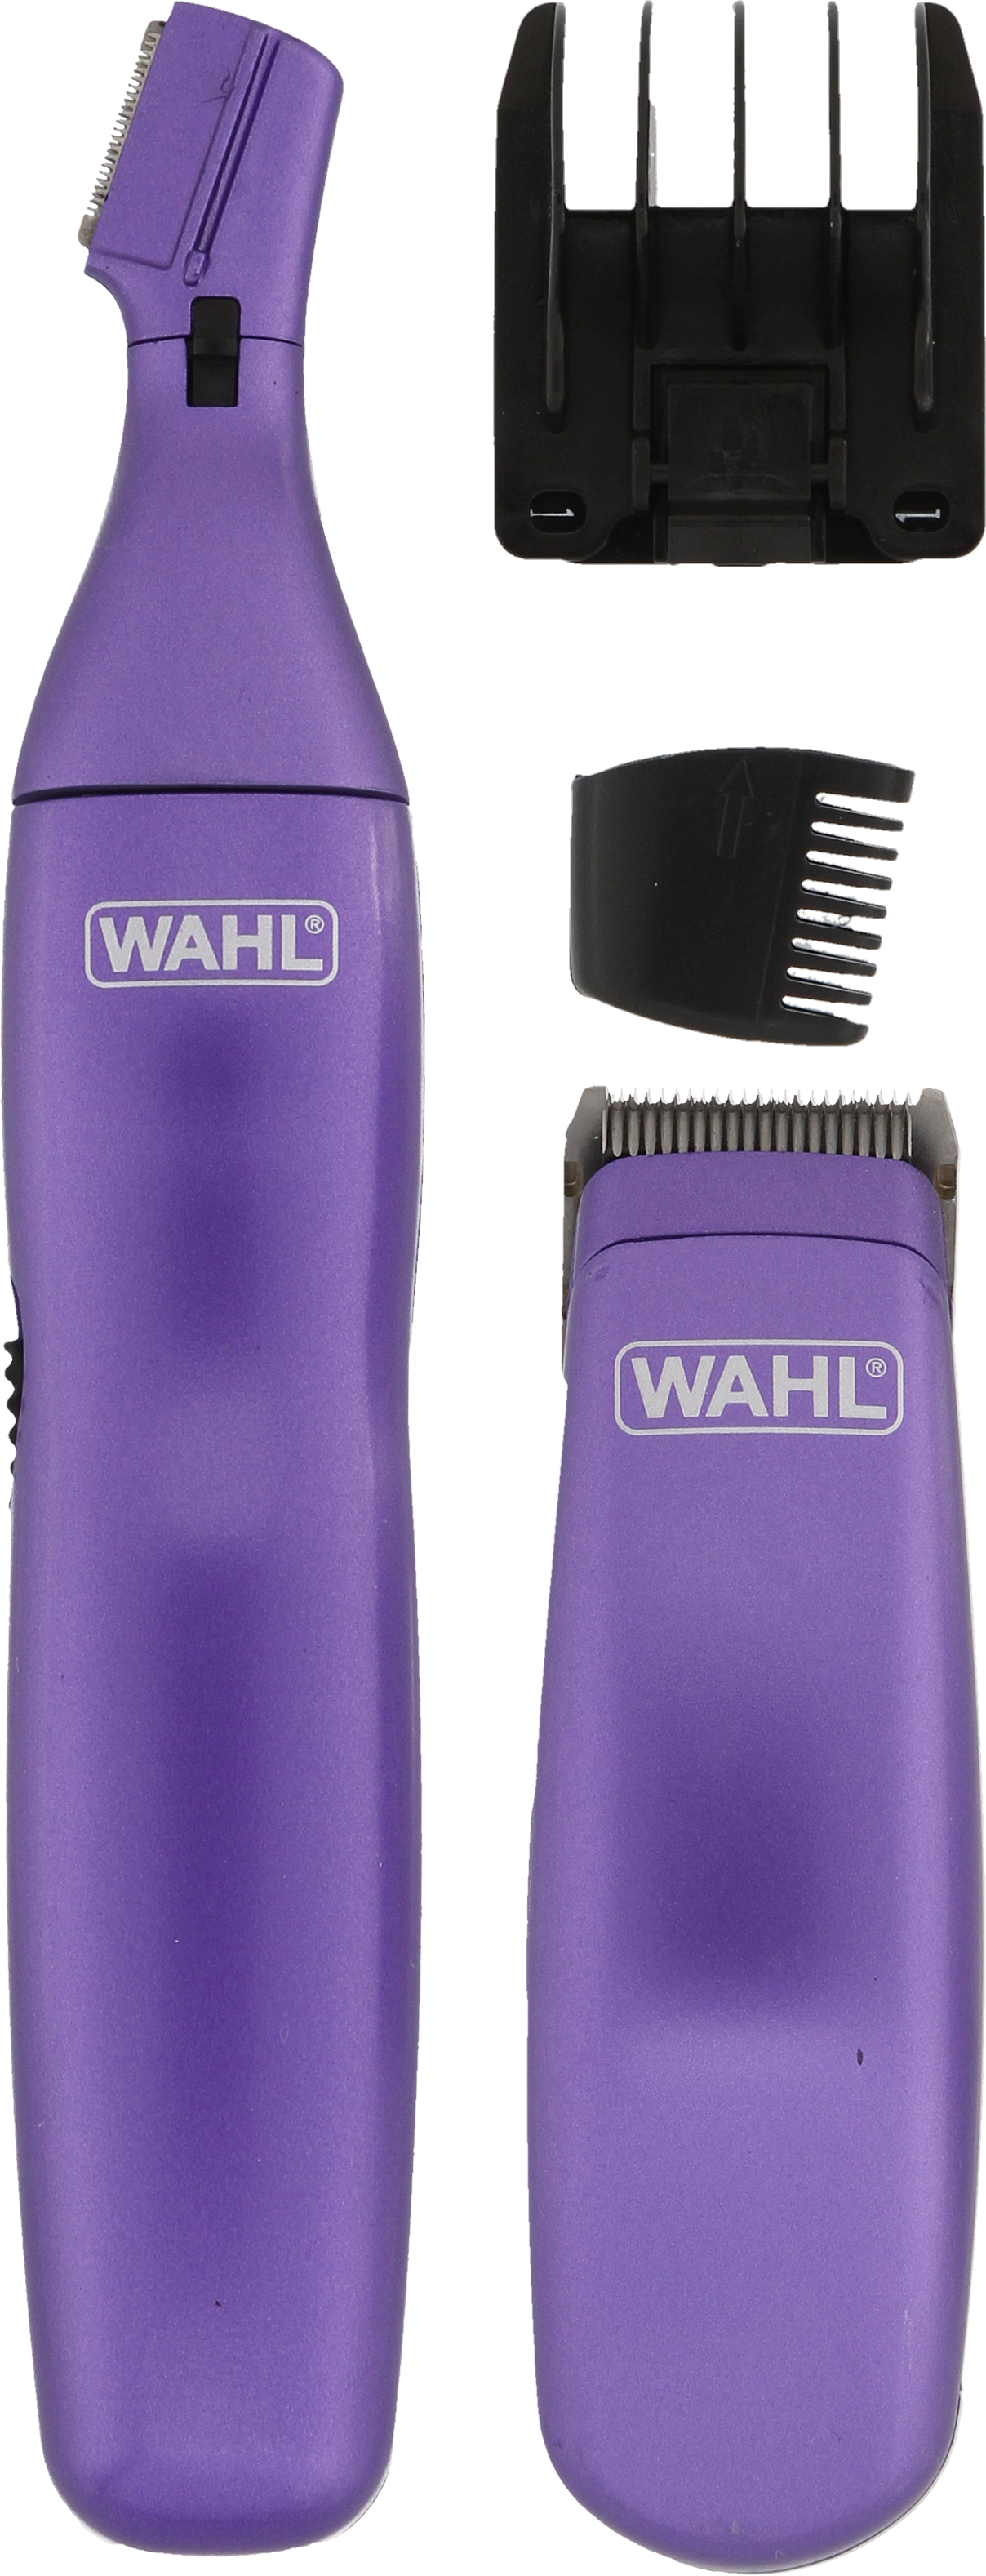 wahl head to toe grooming kit